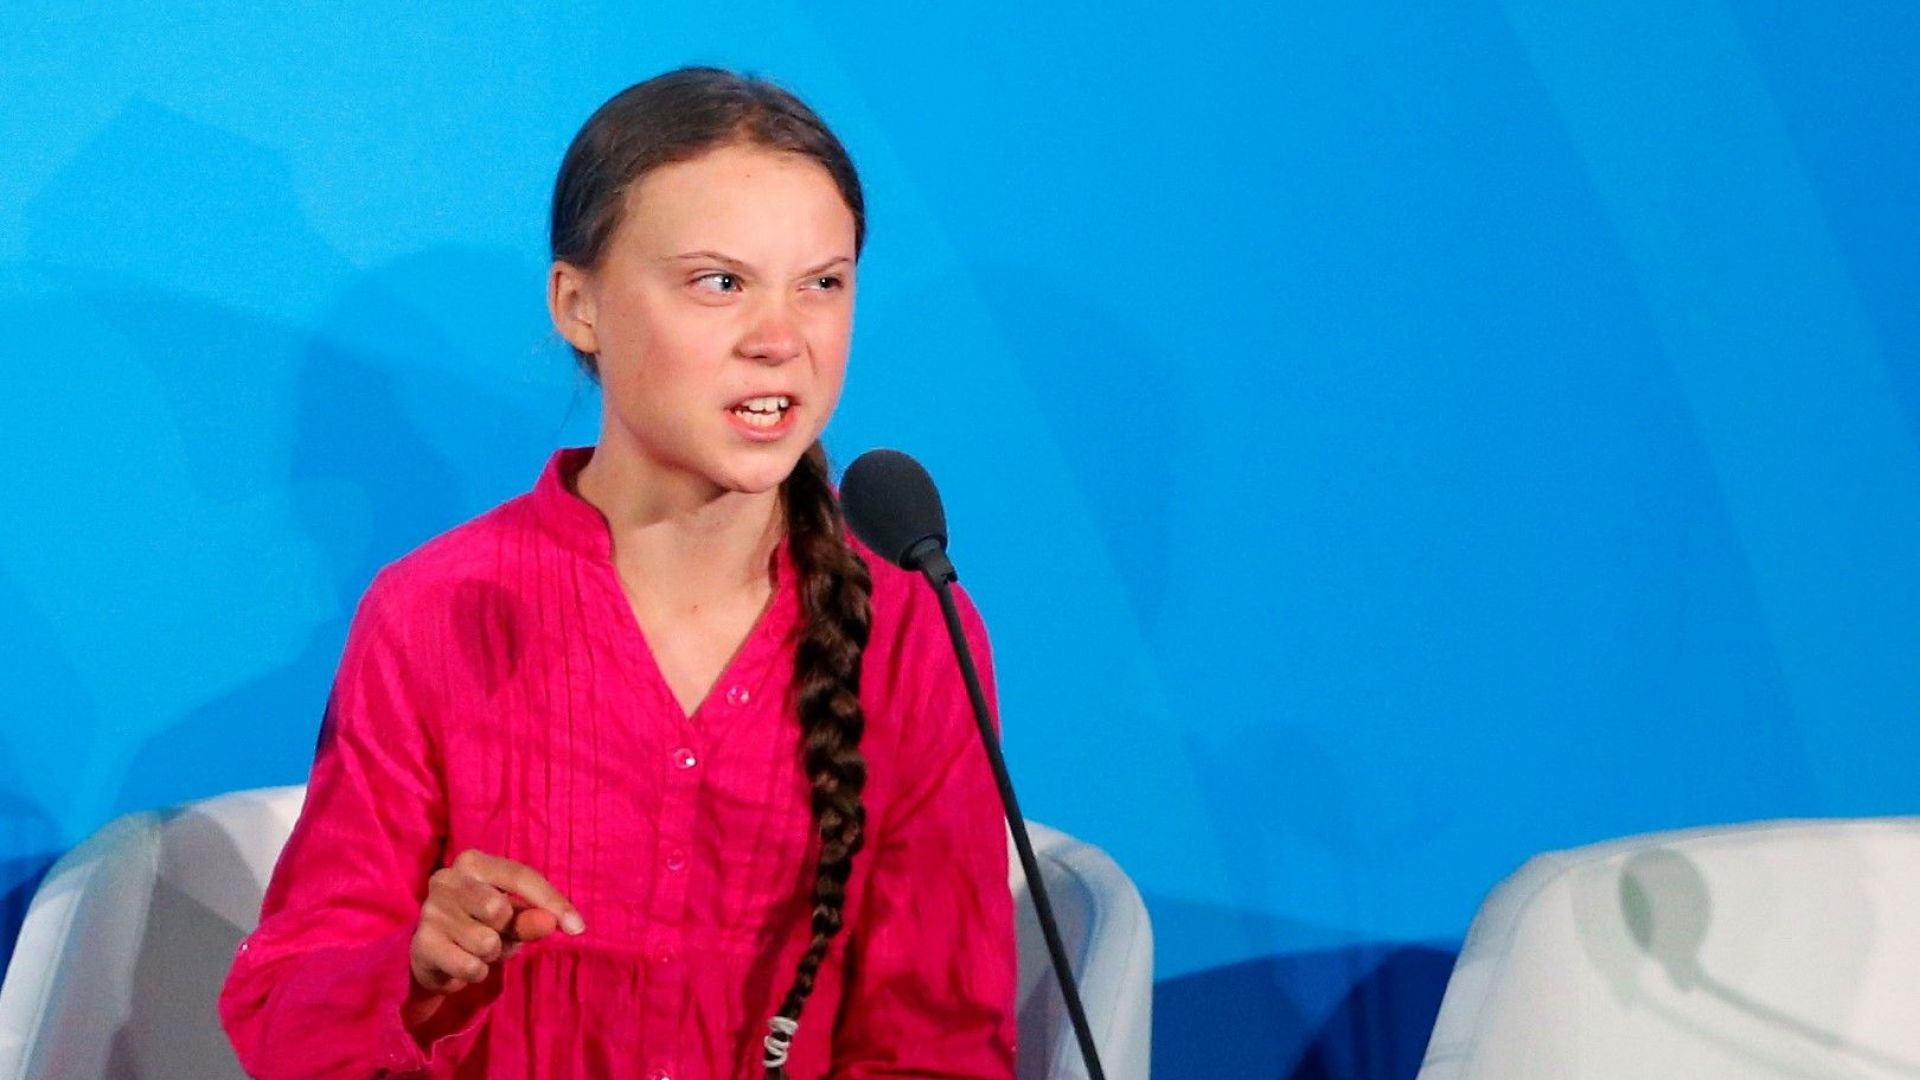 Шведската тийнейджърка Грета Тунберг си спечели милиони почитатели с критиките